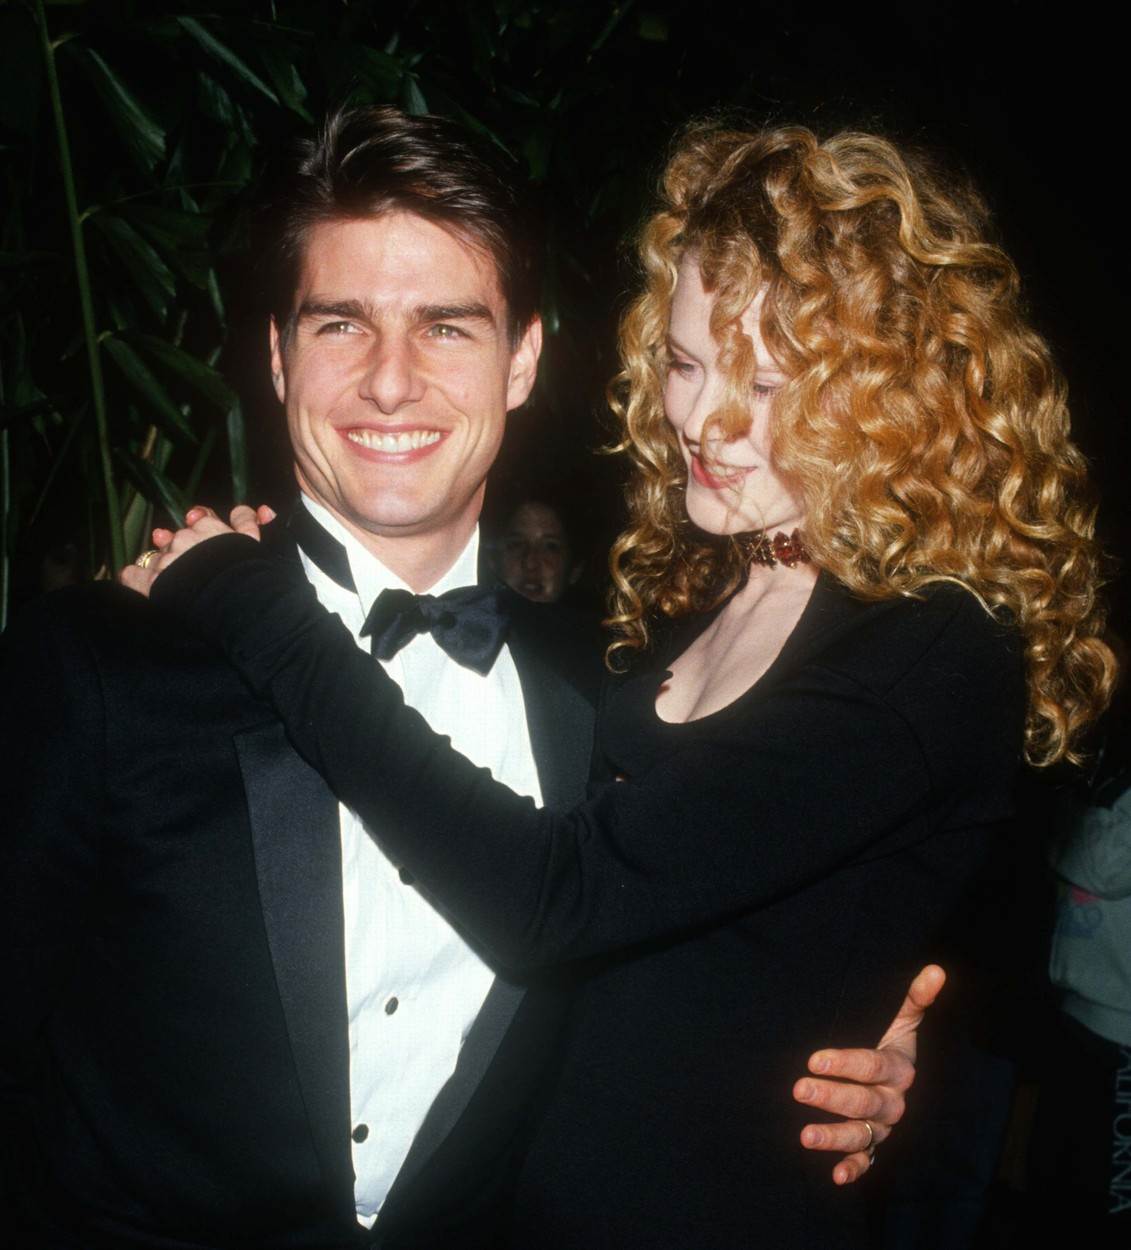 TAJNO DOPISIVANJE Nicole Kidman i Tom Cruise obnavljaju vezu?